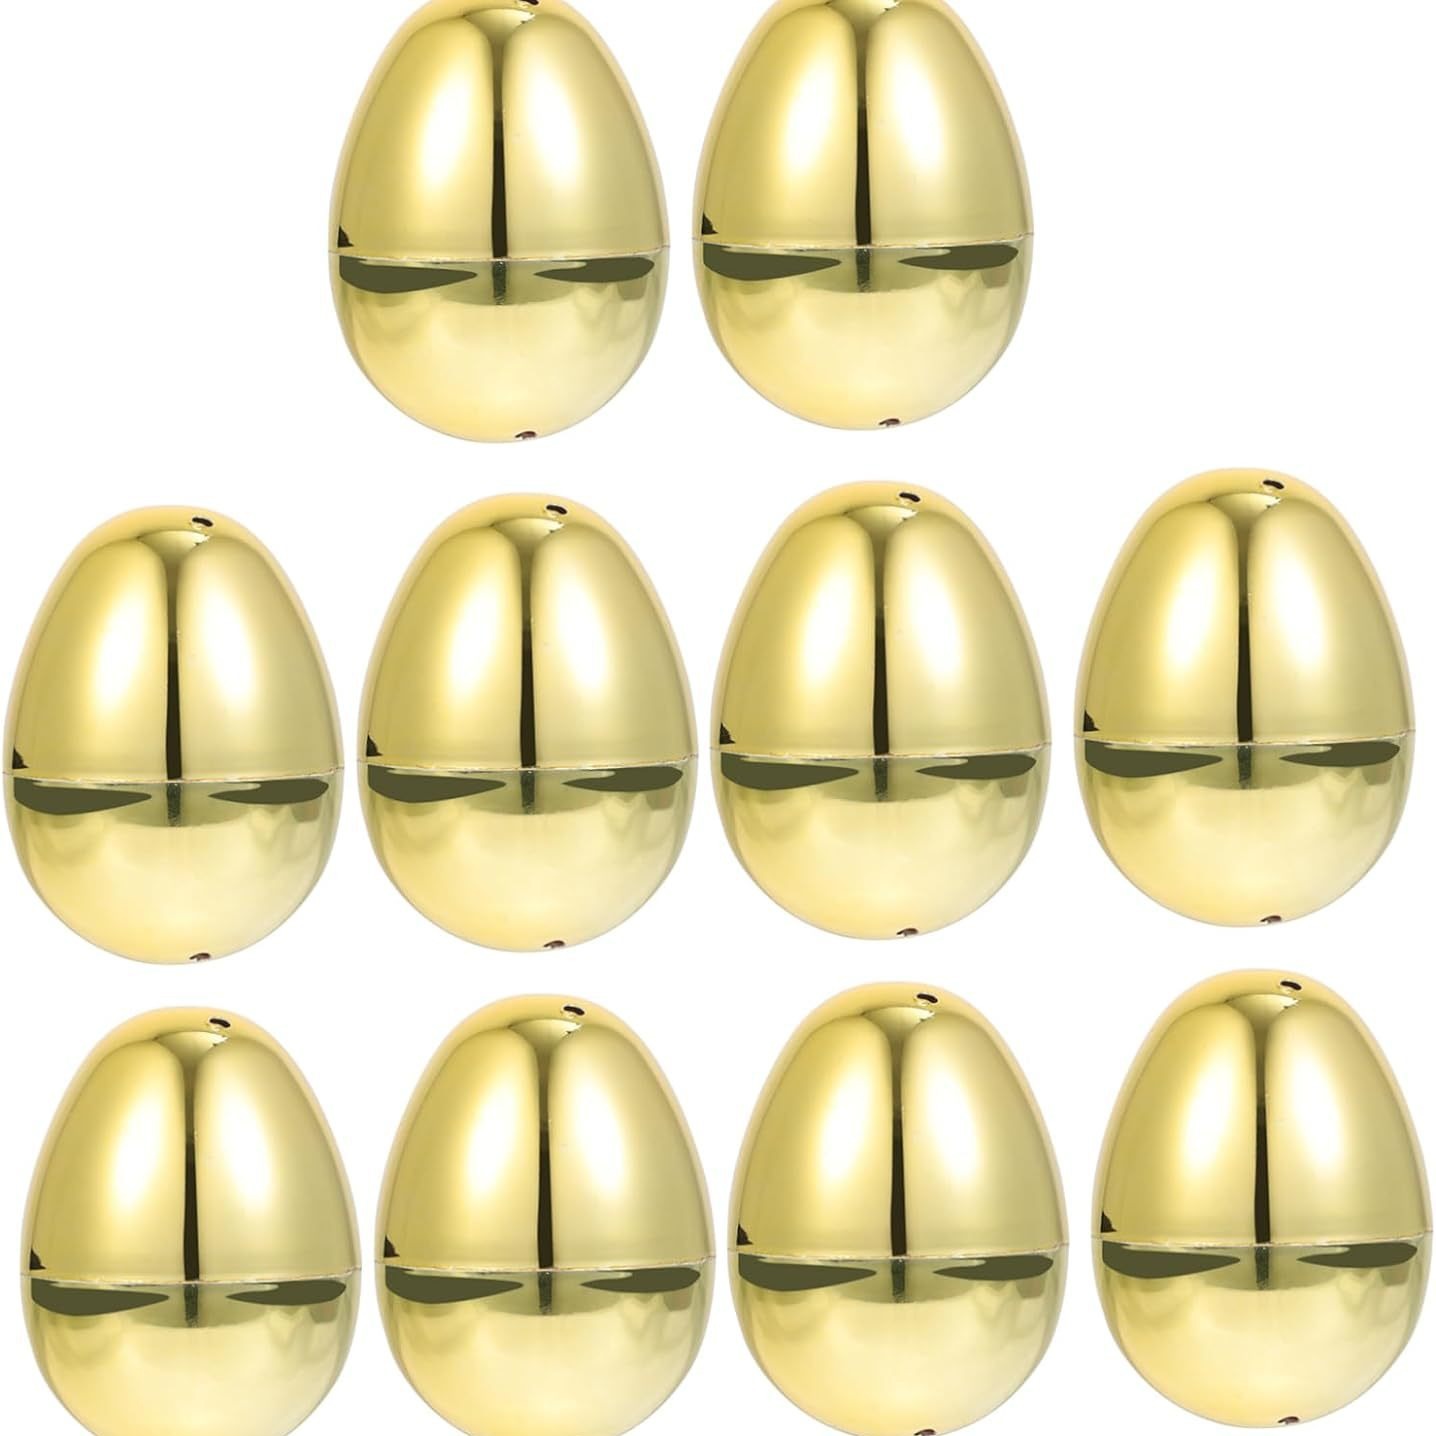 Cross-Border Open Egg Easter Egg Dot Egg Plastic Egg Holiday Decorations Simulation Egg Shell